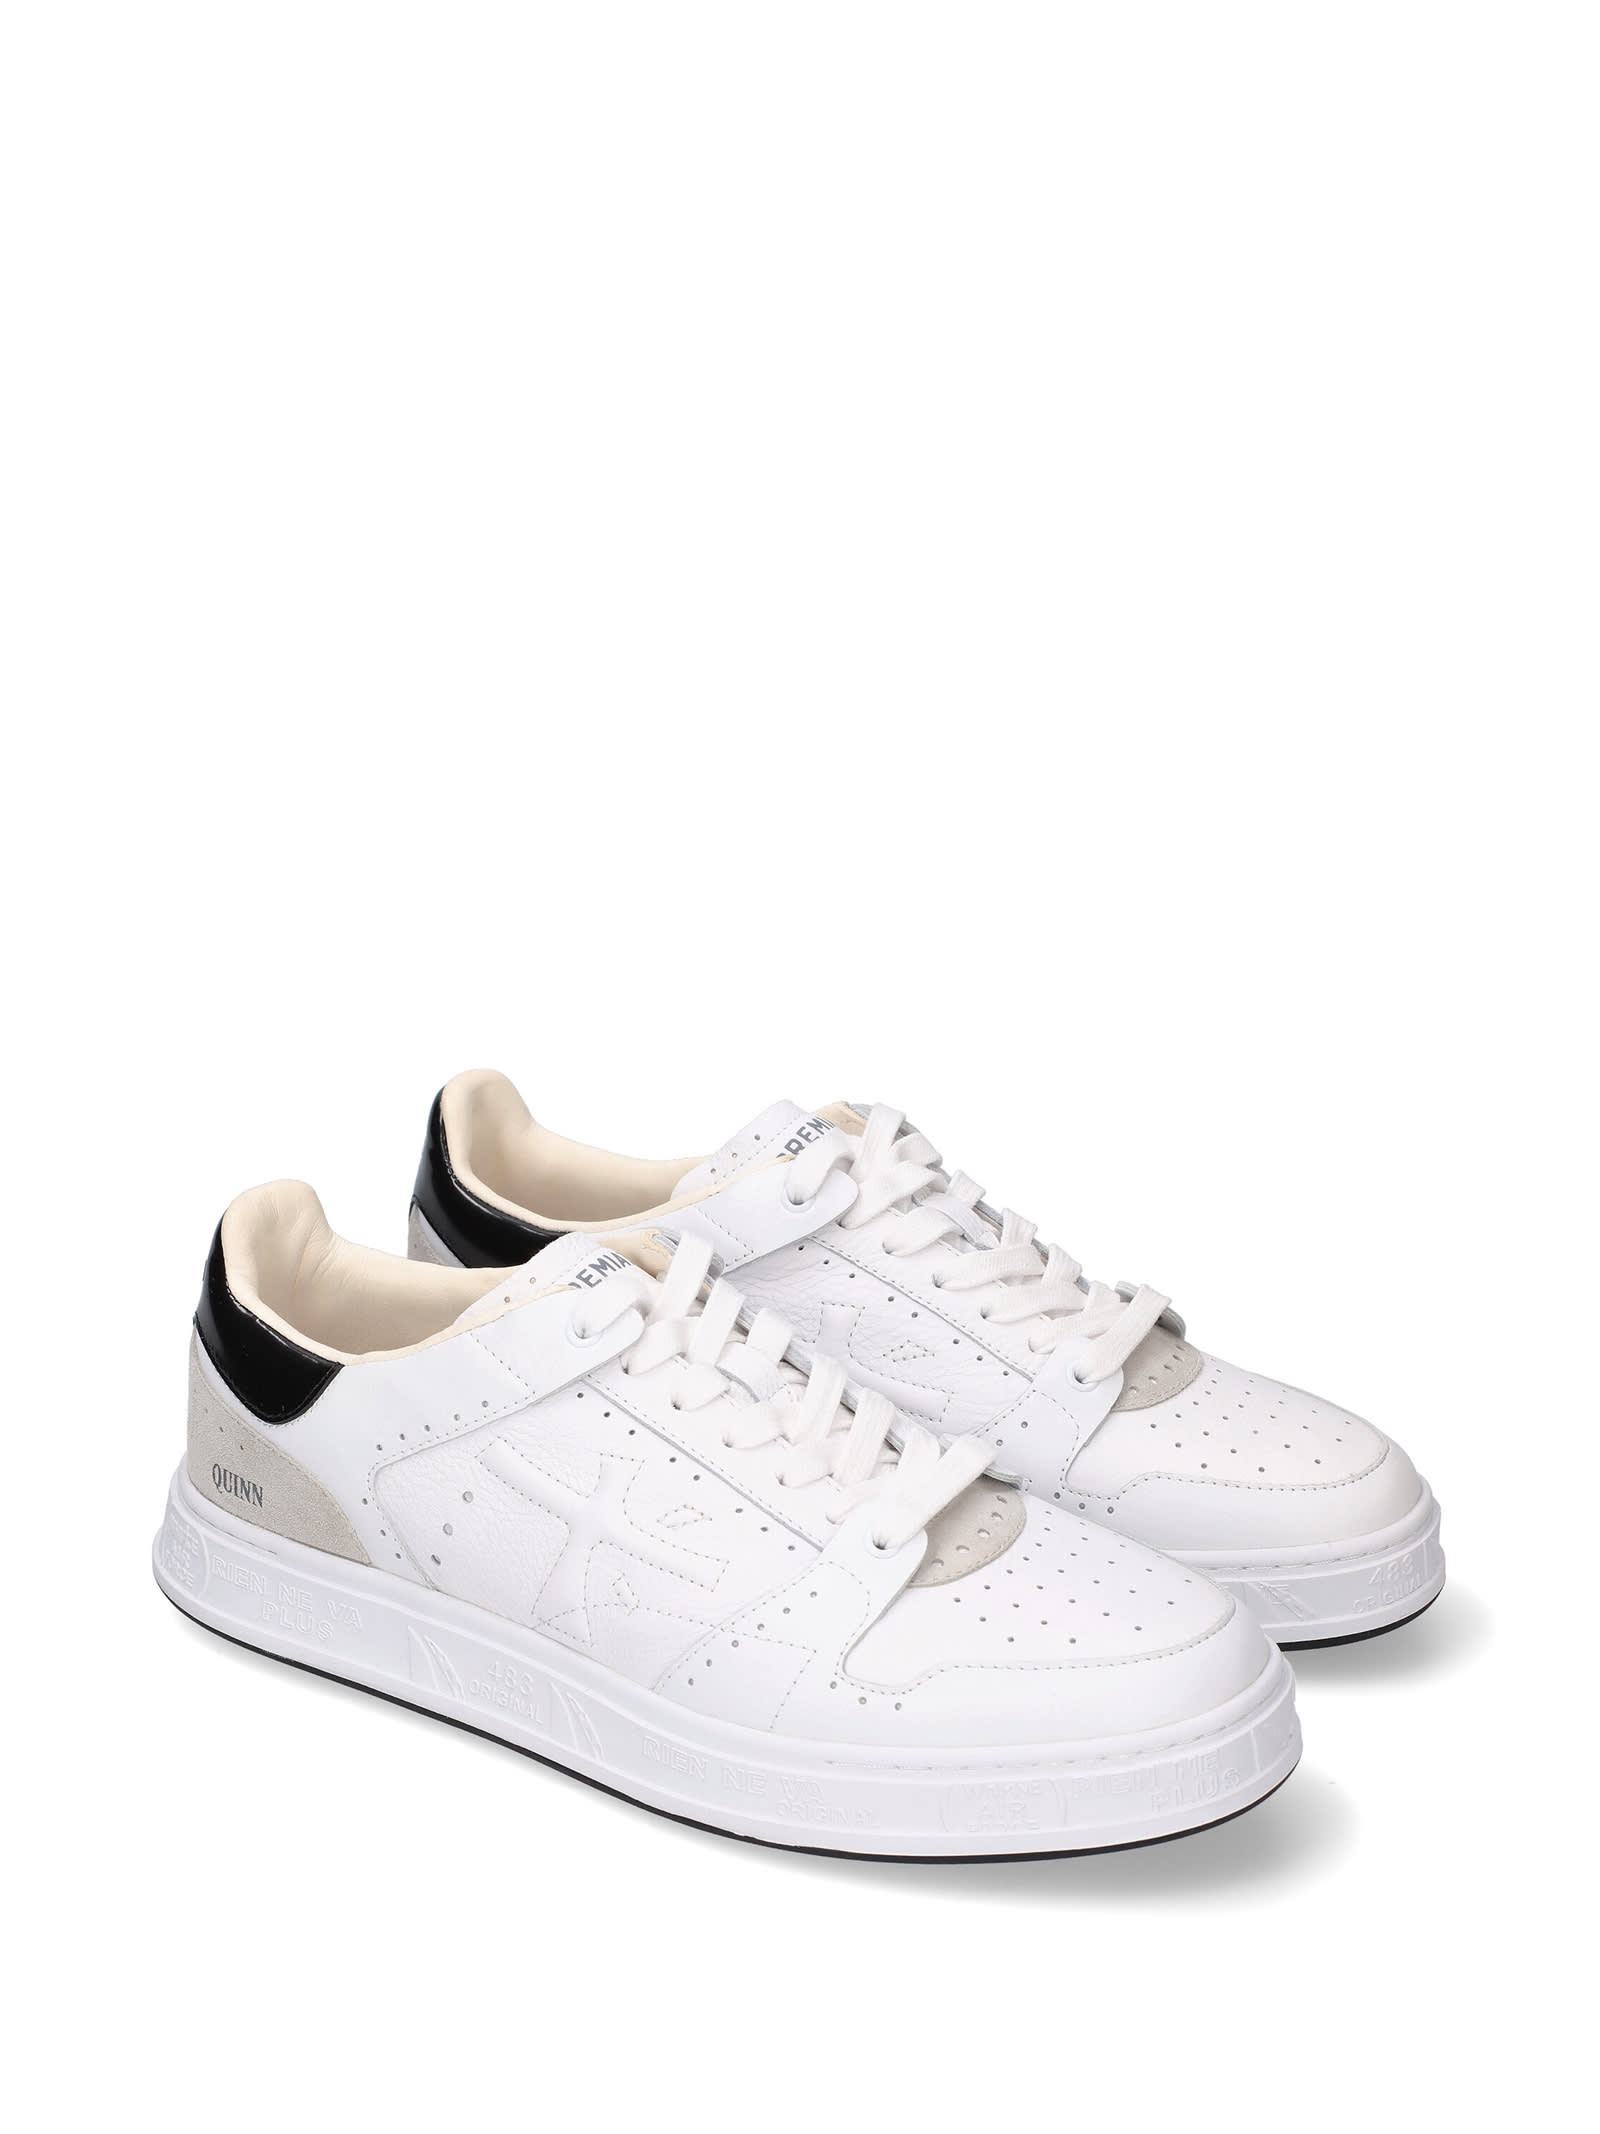 Shop Premiata Quinn 6299 Leather Sneaker In Bianco Nero